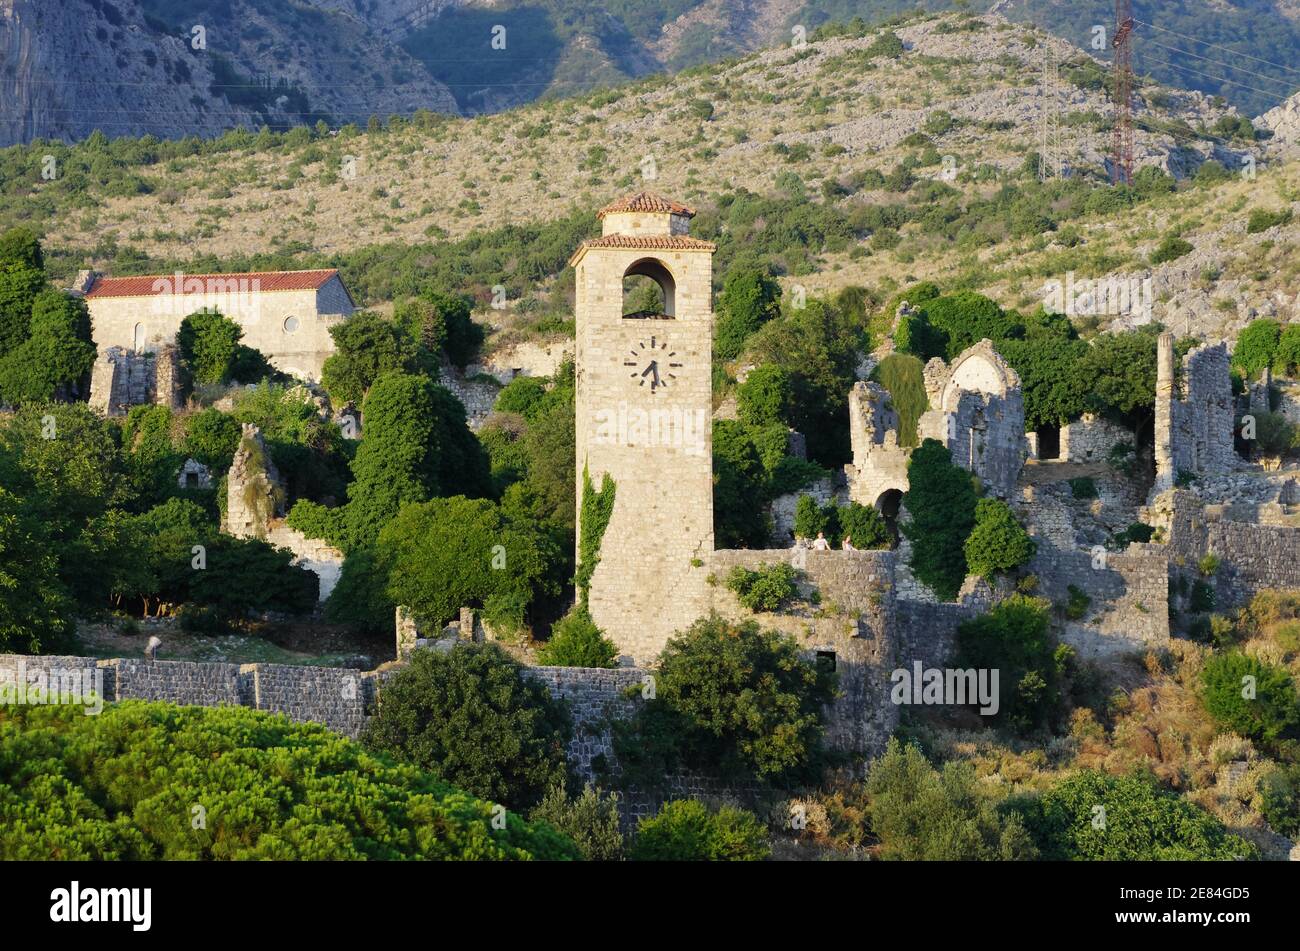 Vue sur la Tour de l'horloge dans la vieille forteresse du Stari Bar, Monténégro Banque D'Images